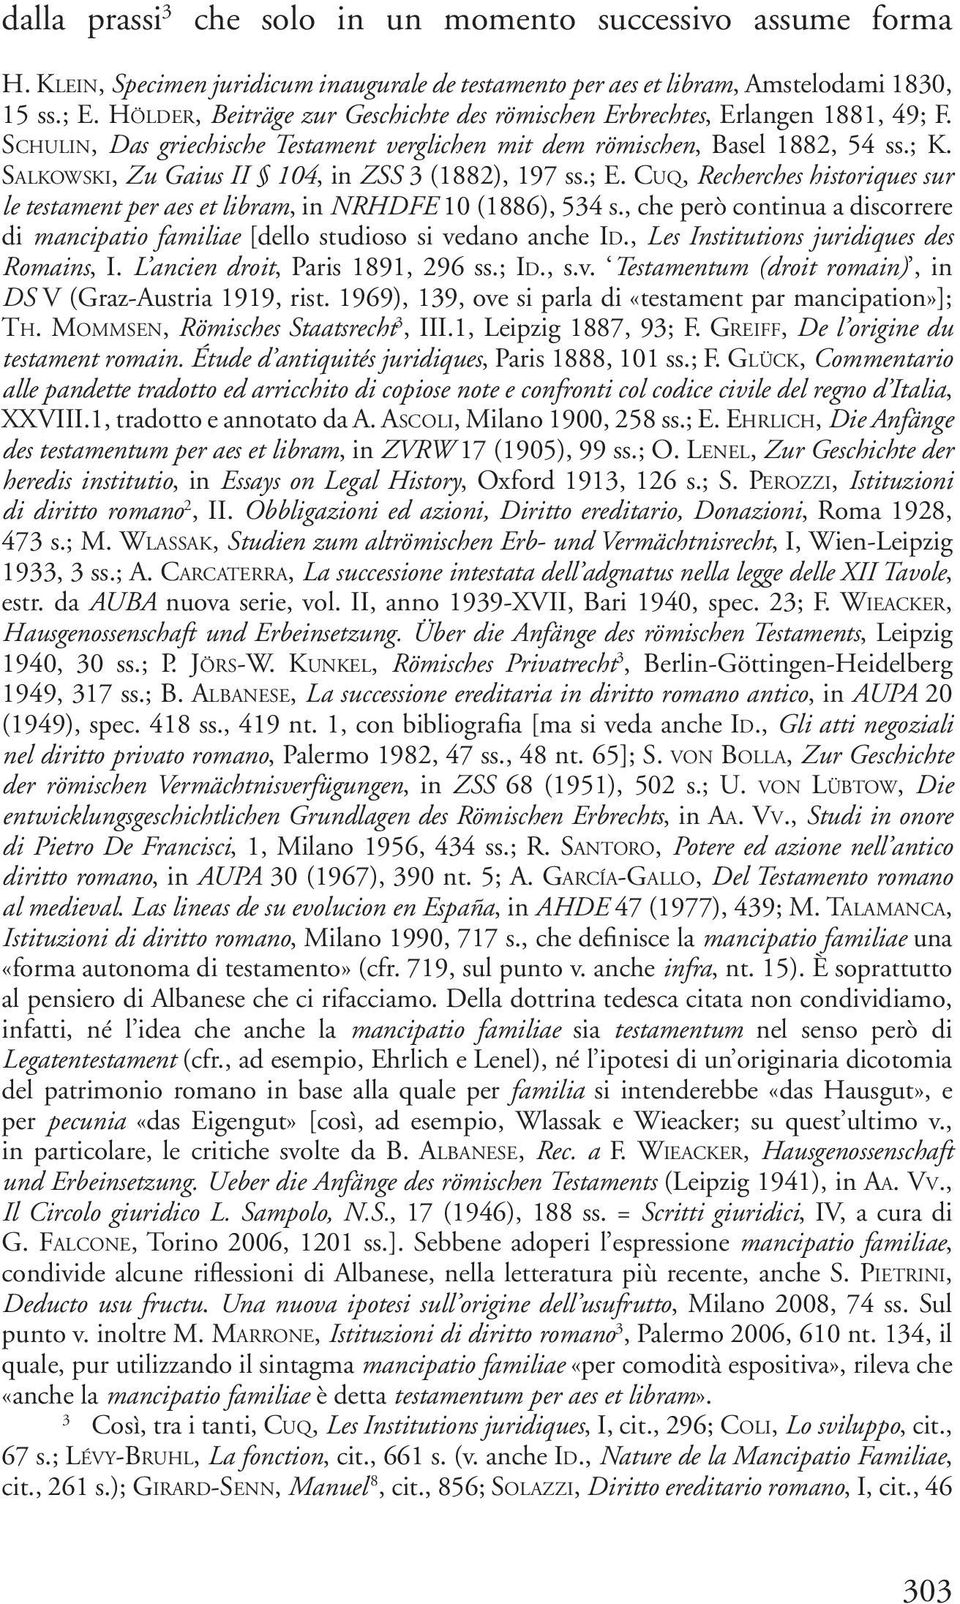 Sa l k o w s k i, Zu Gaius II 104, in ZSS 3 (1882), 197 ss.; E. Cu q, Recherches historiques sur le testament per aes et libram, in NRHDFE 10 (1886), 534 s.